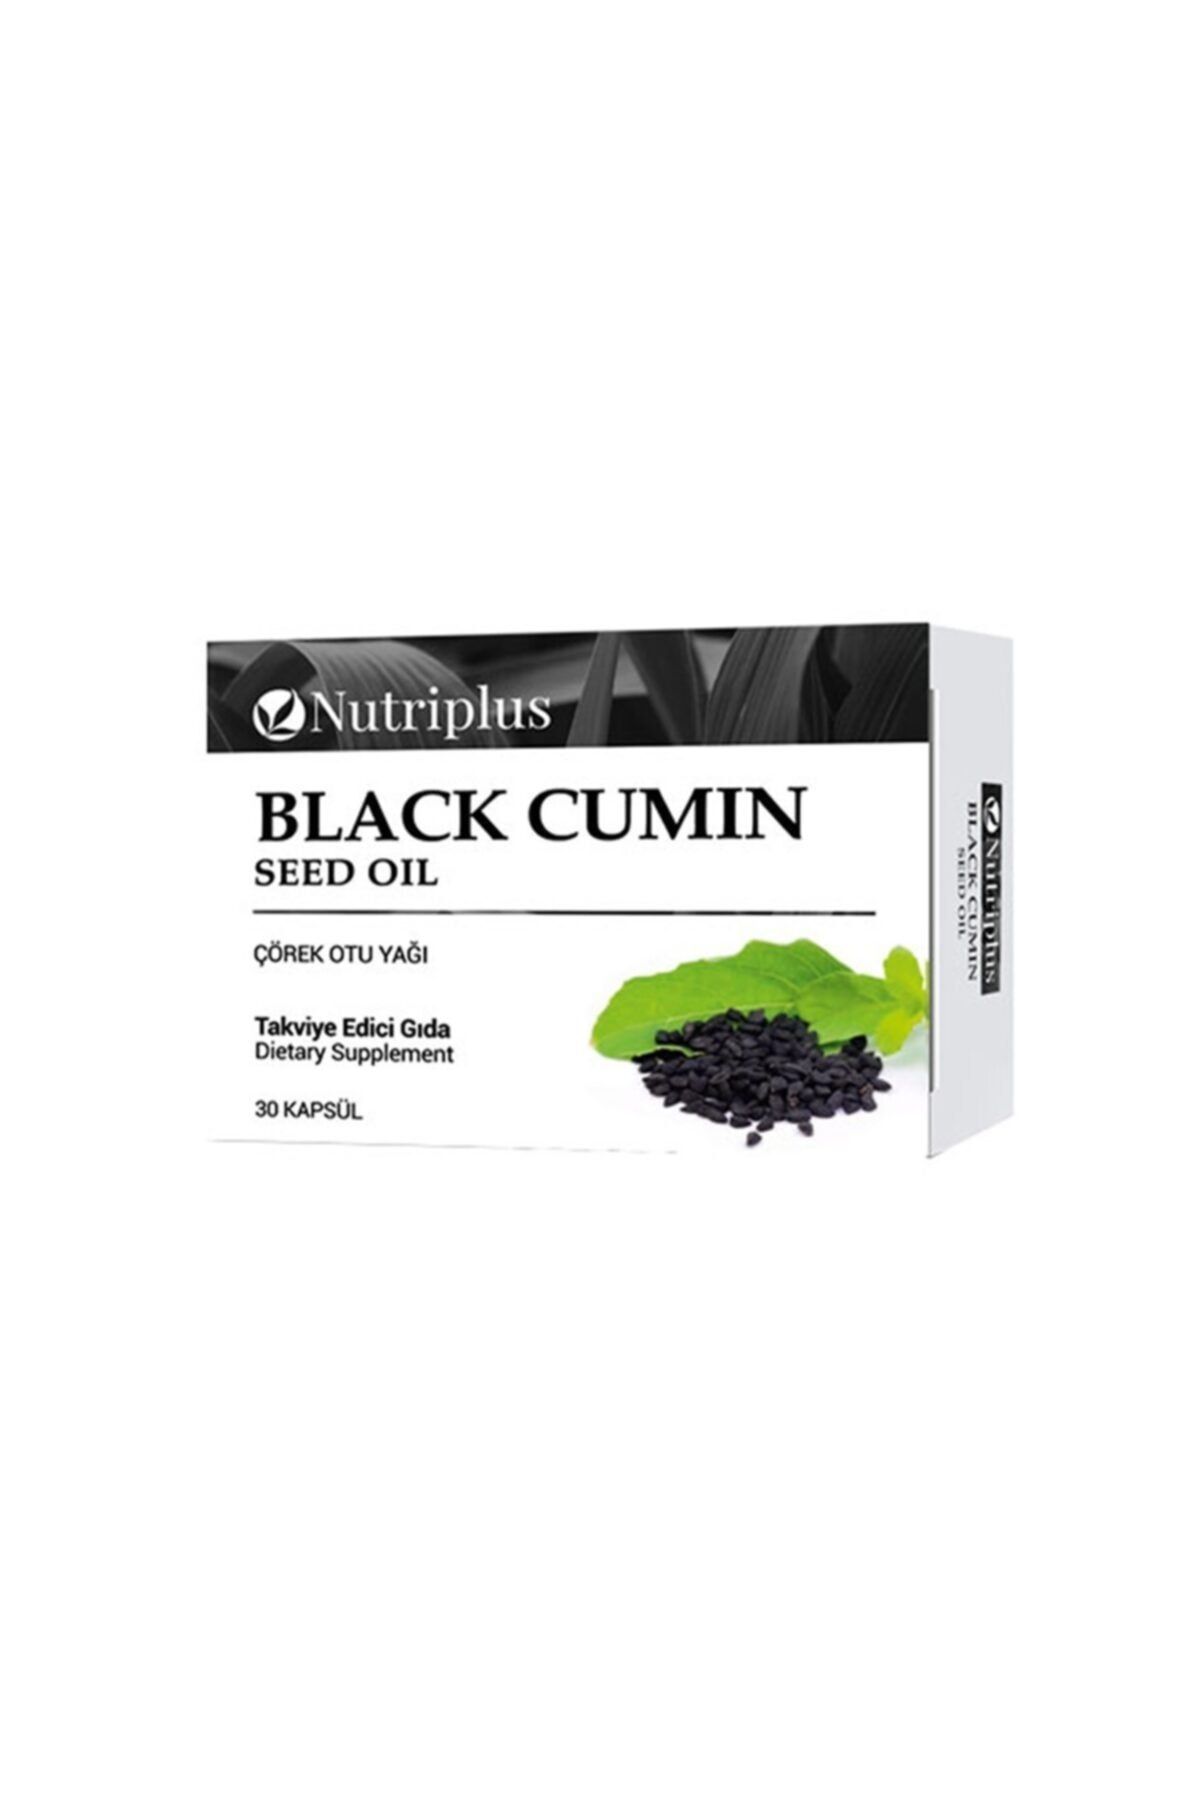 Farmasi Nutriplus Black Seed / Çörek Otu Yağı Kapsülü Takviye Edici Gıda 30 Kapsül